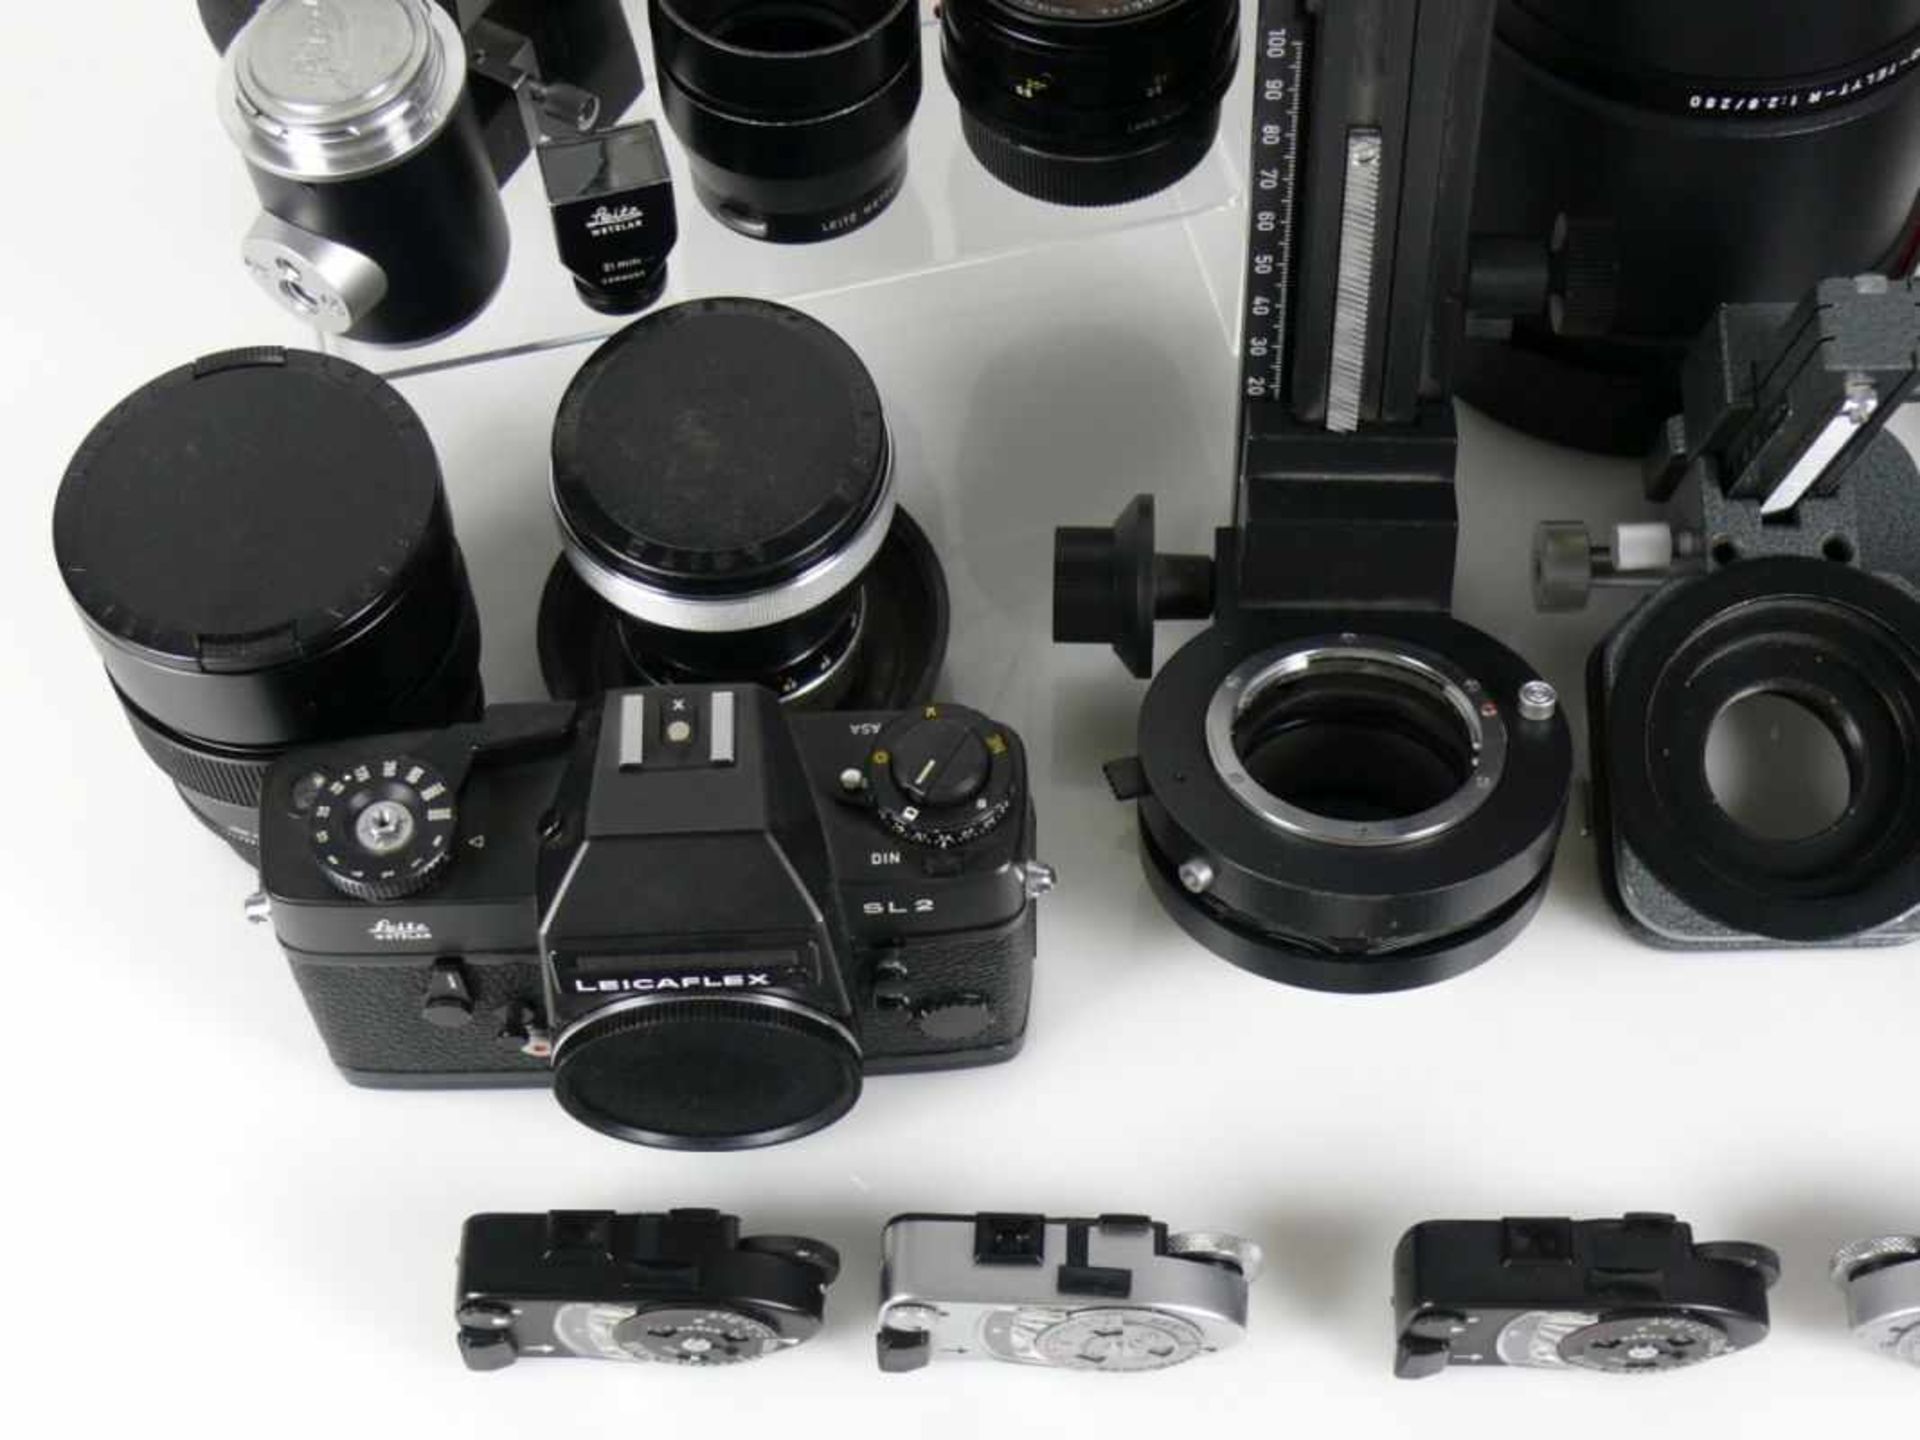 LEICA-Sammlung Teil II 2 Kameras; Leicaflex SL2 und Leica CL; mit div. Objektiven und weiterem - Bild 3 aus 6